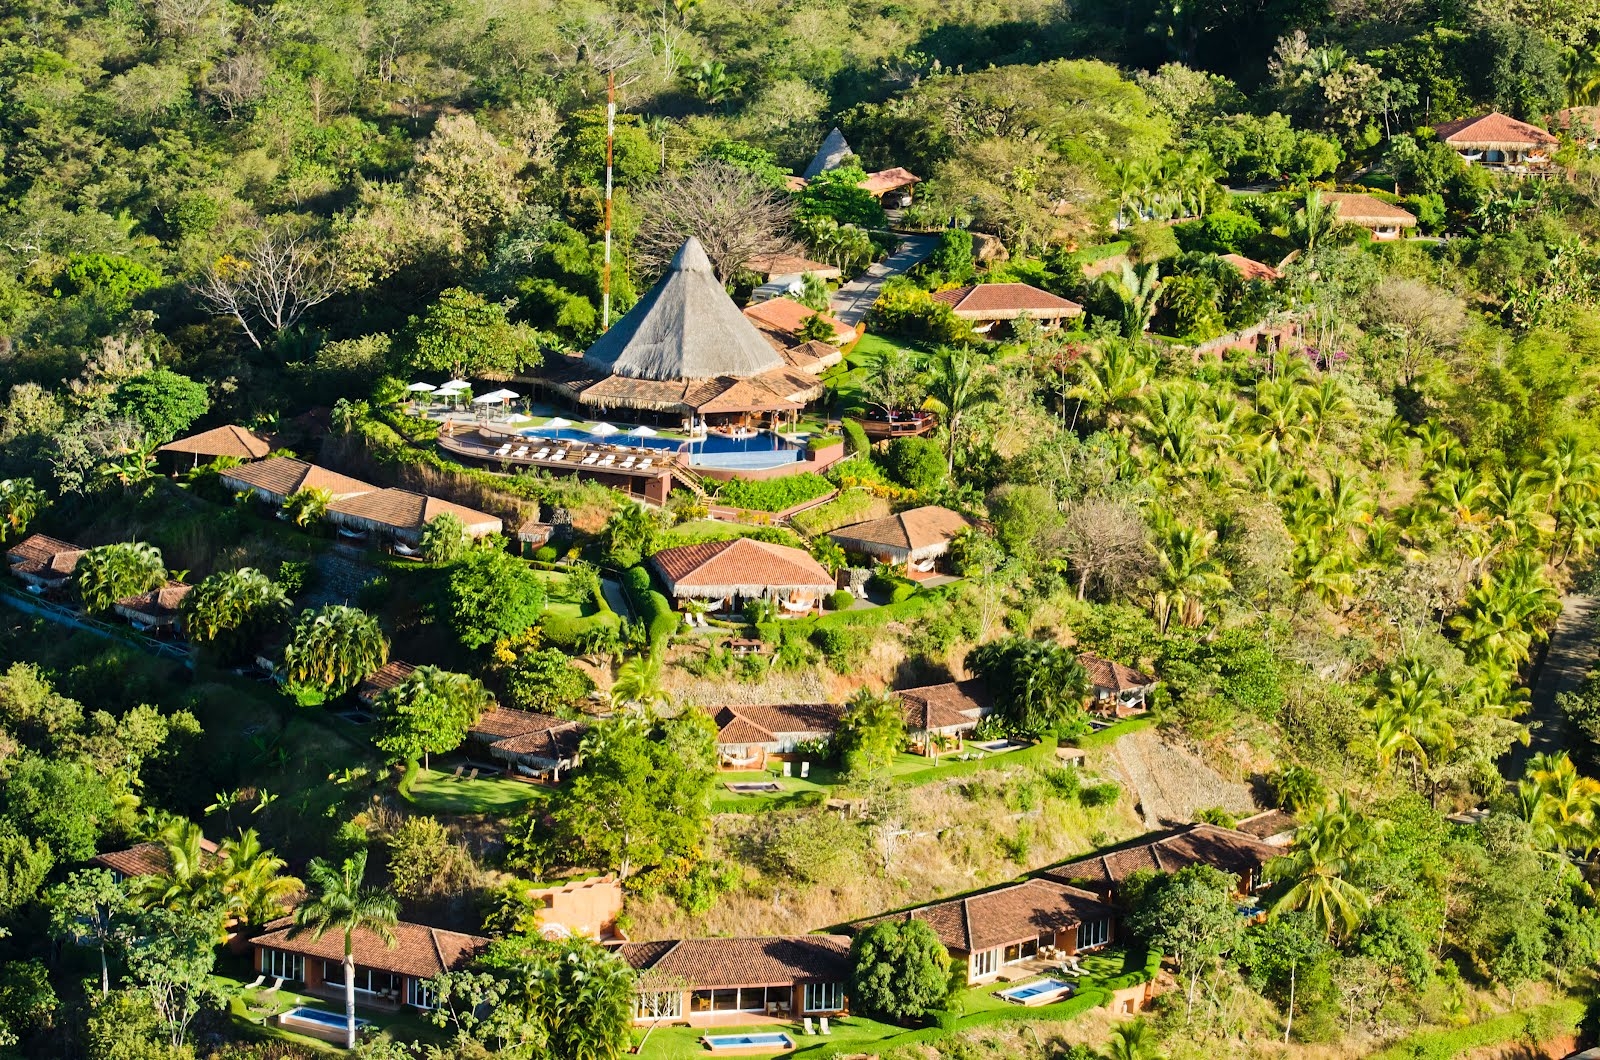 Exterior at Punta Islita in Costa Rica